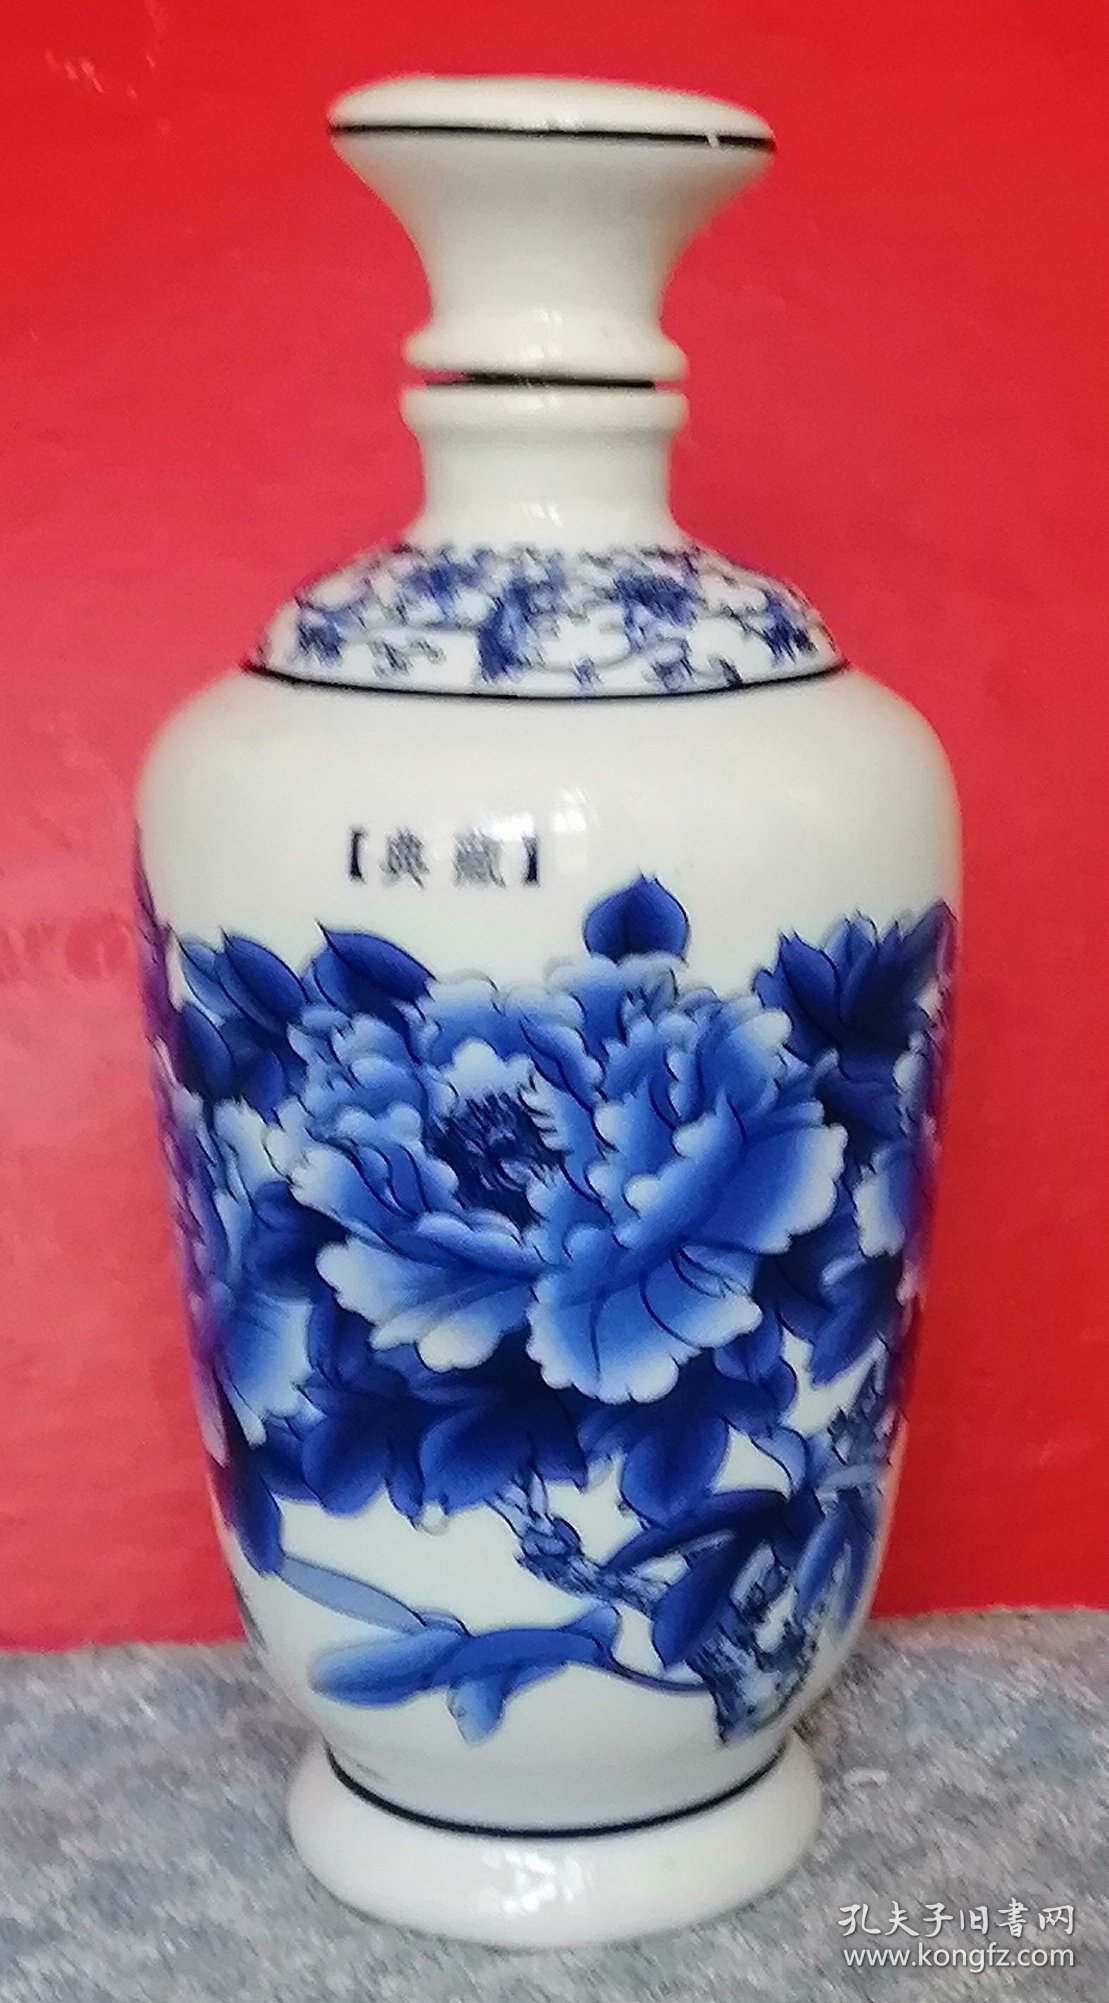 旧的空酒瓶，蓝牡丹花图景德镇酒瓶高21厘米容量475毫升 原物拍照ff